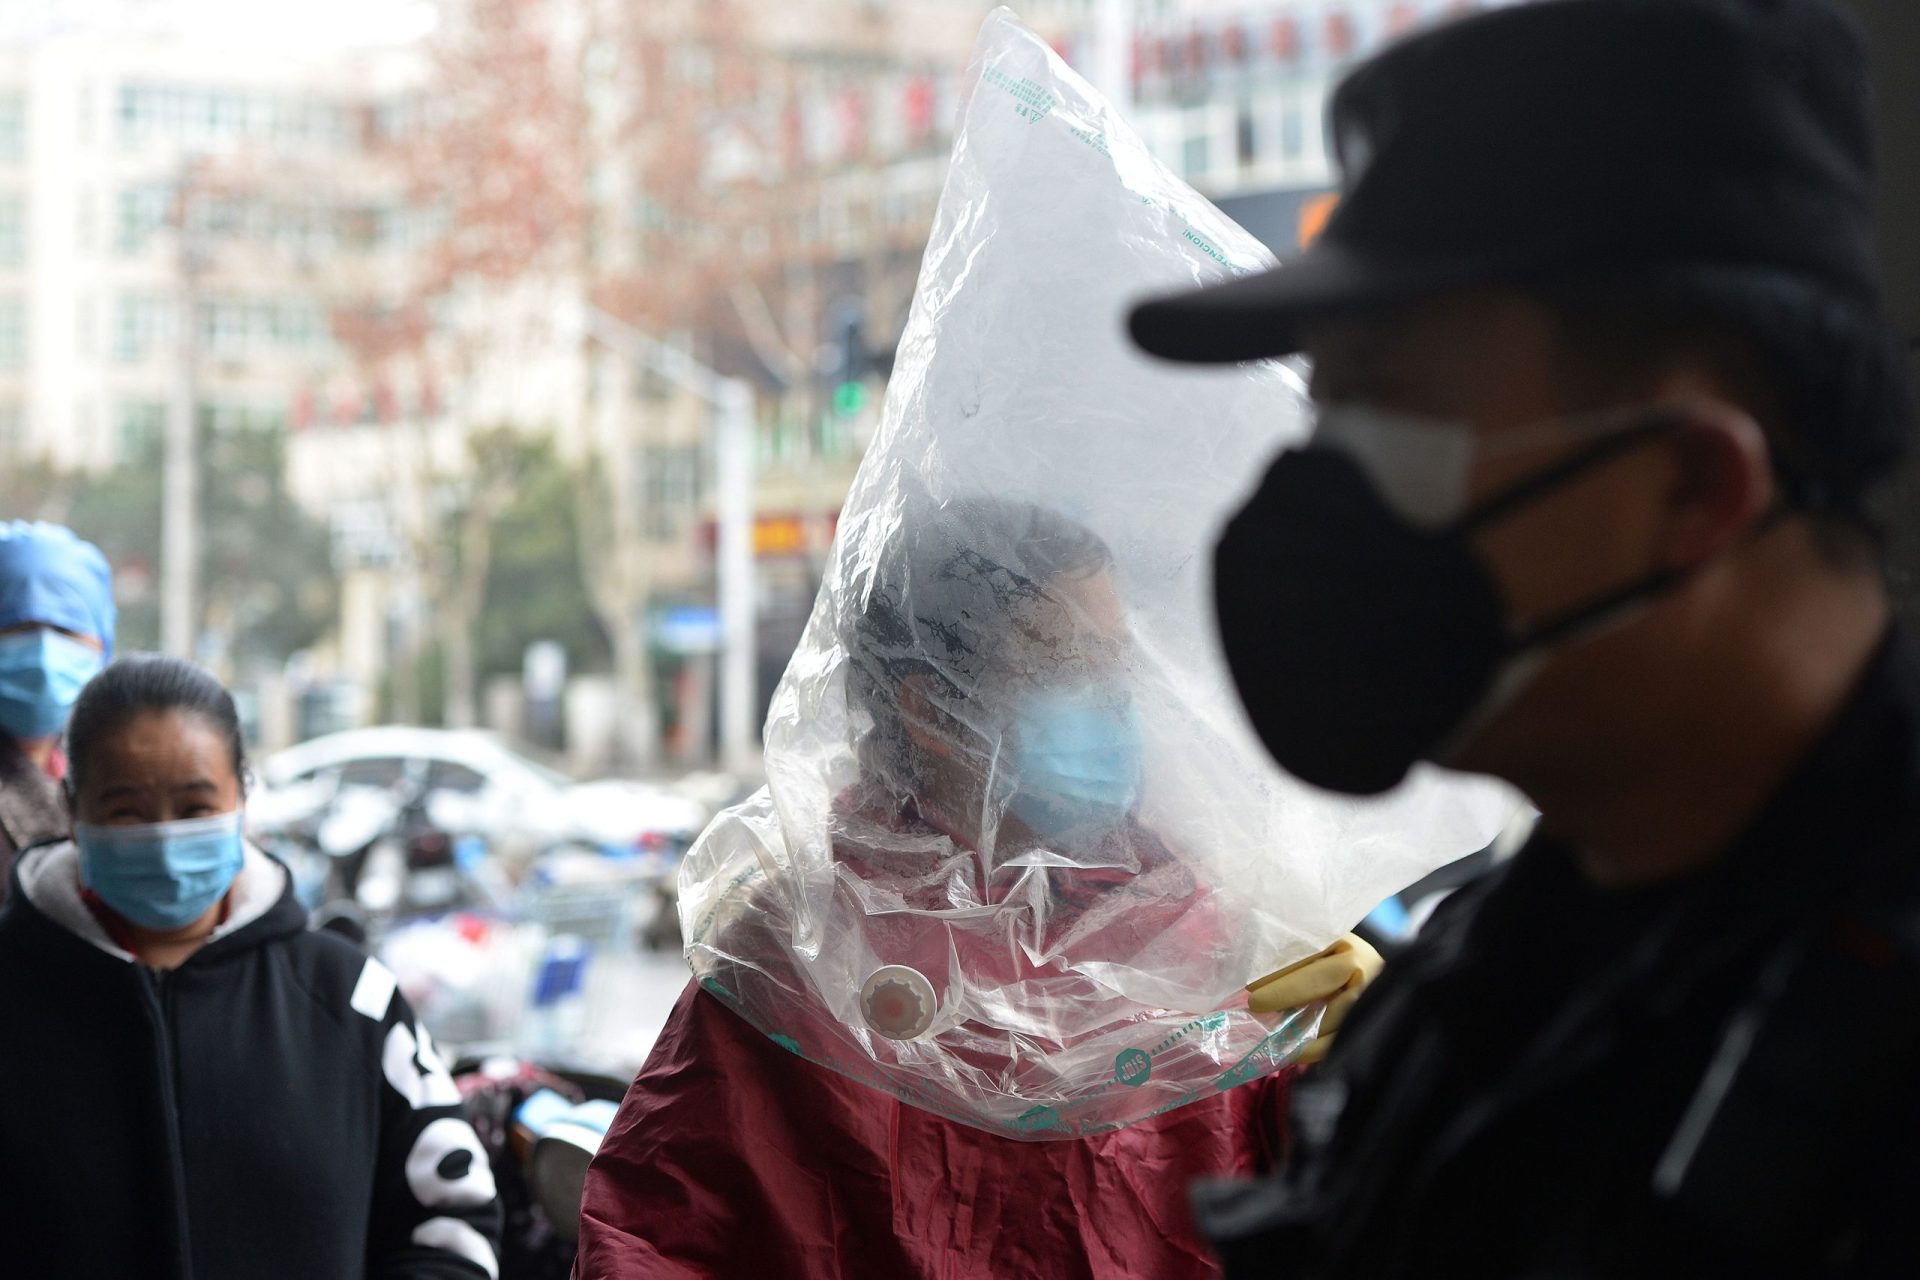 Face à escassez de equipamentos, chineses improvisam na proteção contra coronavírus | Fotogaleria